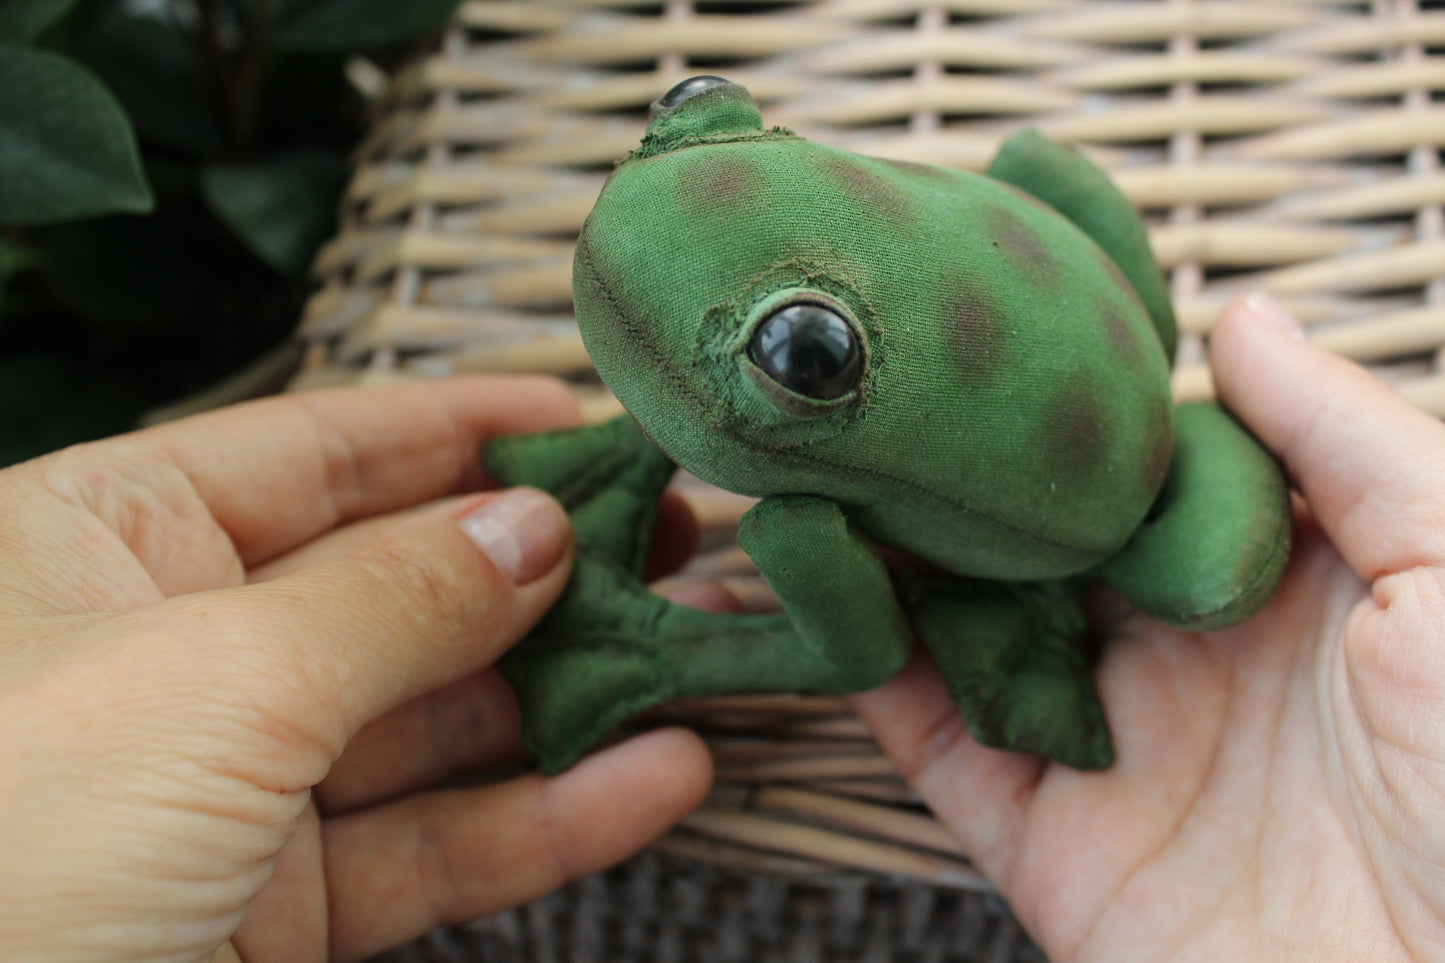 Frog sewing pattern, frog plush